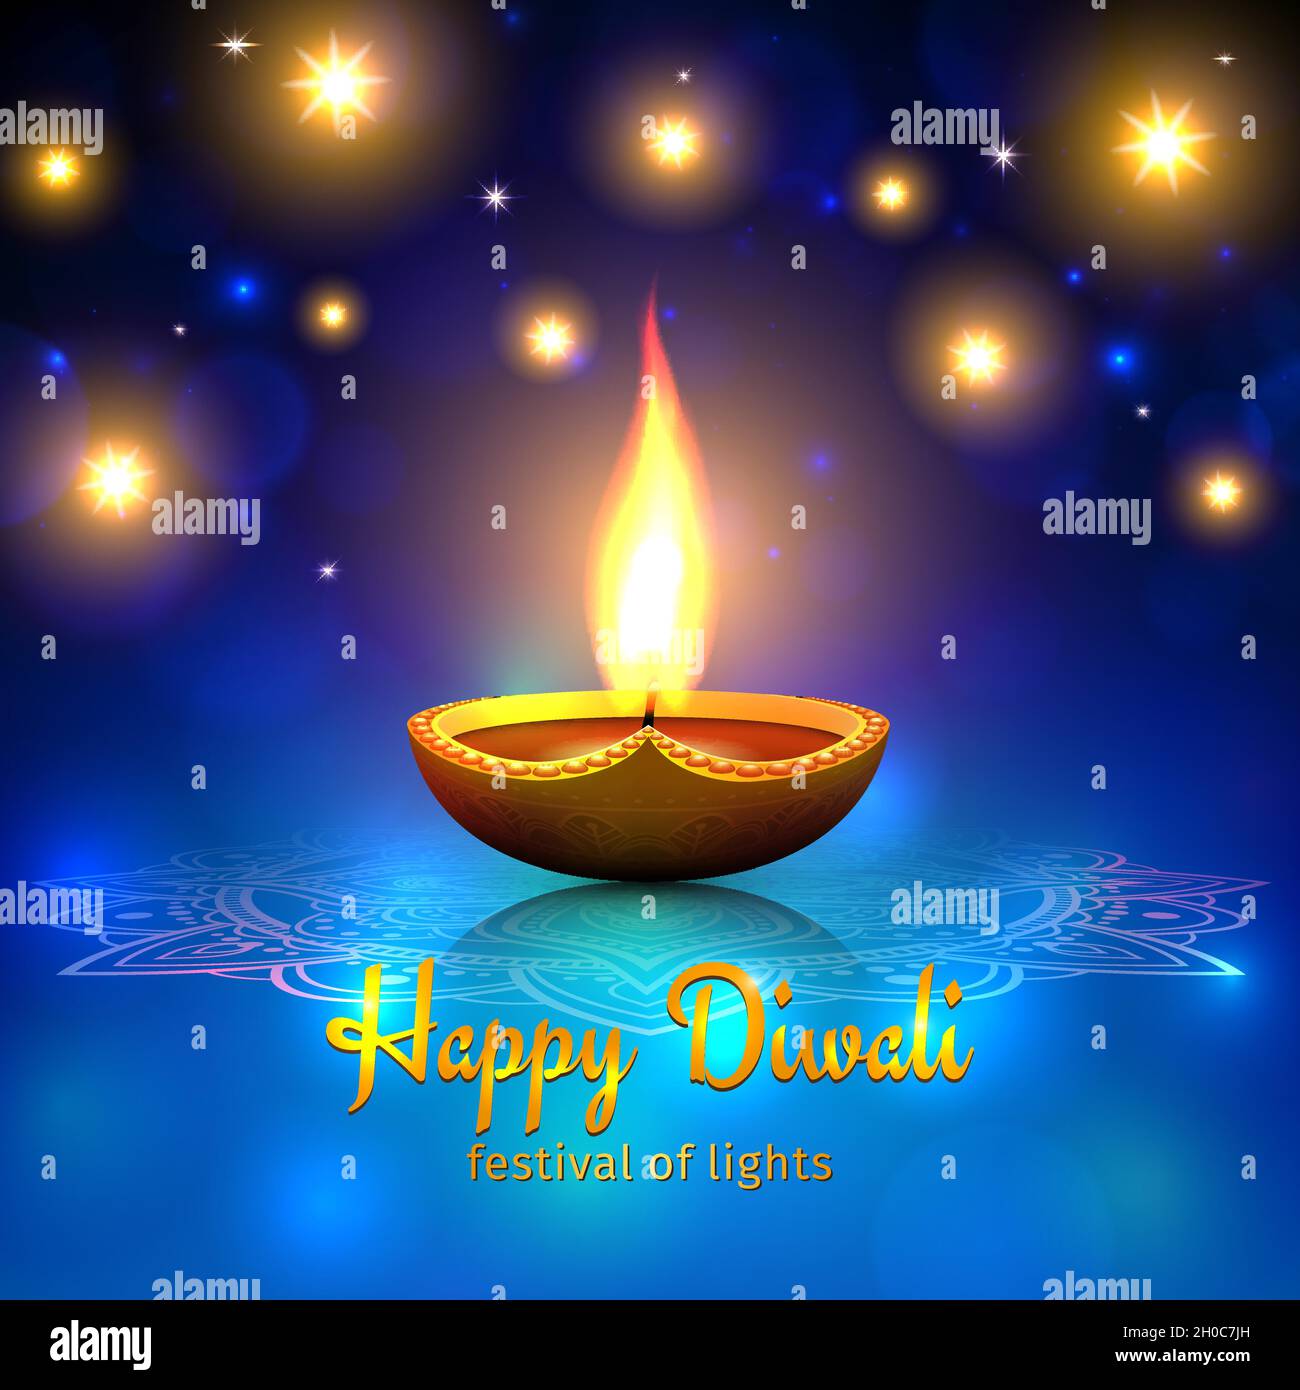 Những minh họa vector phong cách Diwali sẽ khiến bạn ngất ngây với các mẫu thiết kế đầy sáng tạo và ấn tượng. Đừng bỏ lỡ hình ảnh liên quan tới từ khoá này!